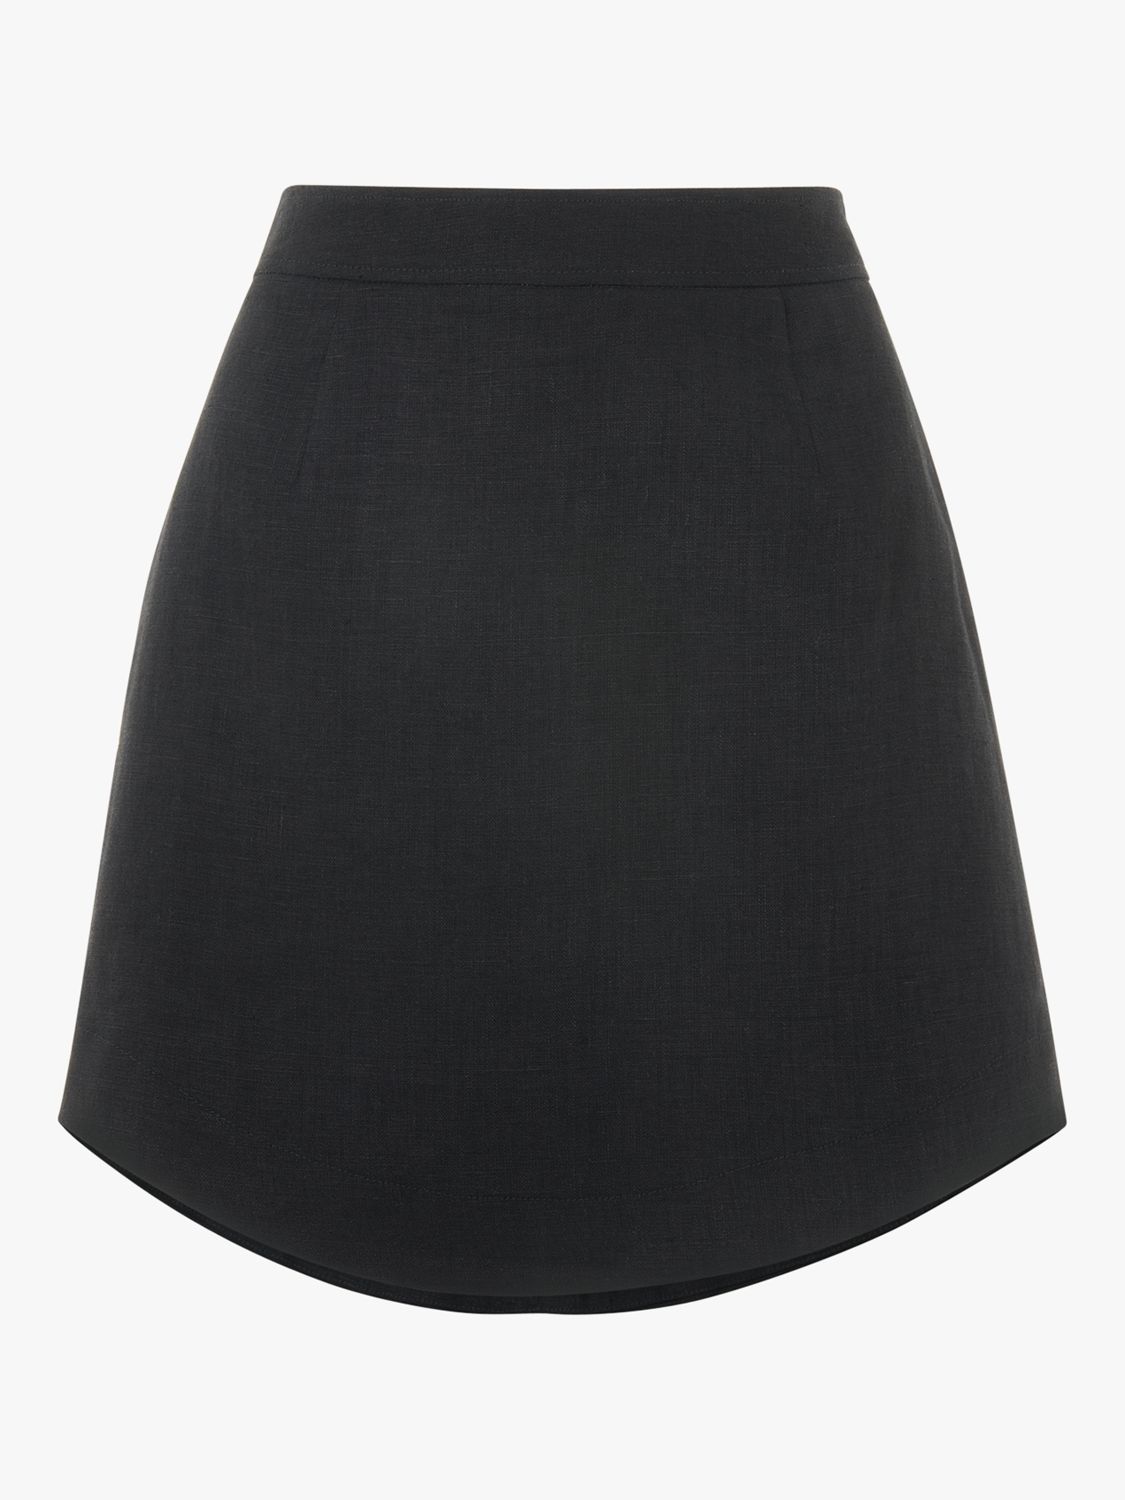 Whistles Curved Hem Linen Skirt, Black at John Lewis & Partners